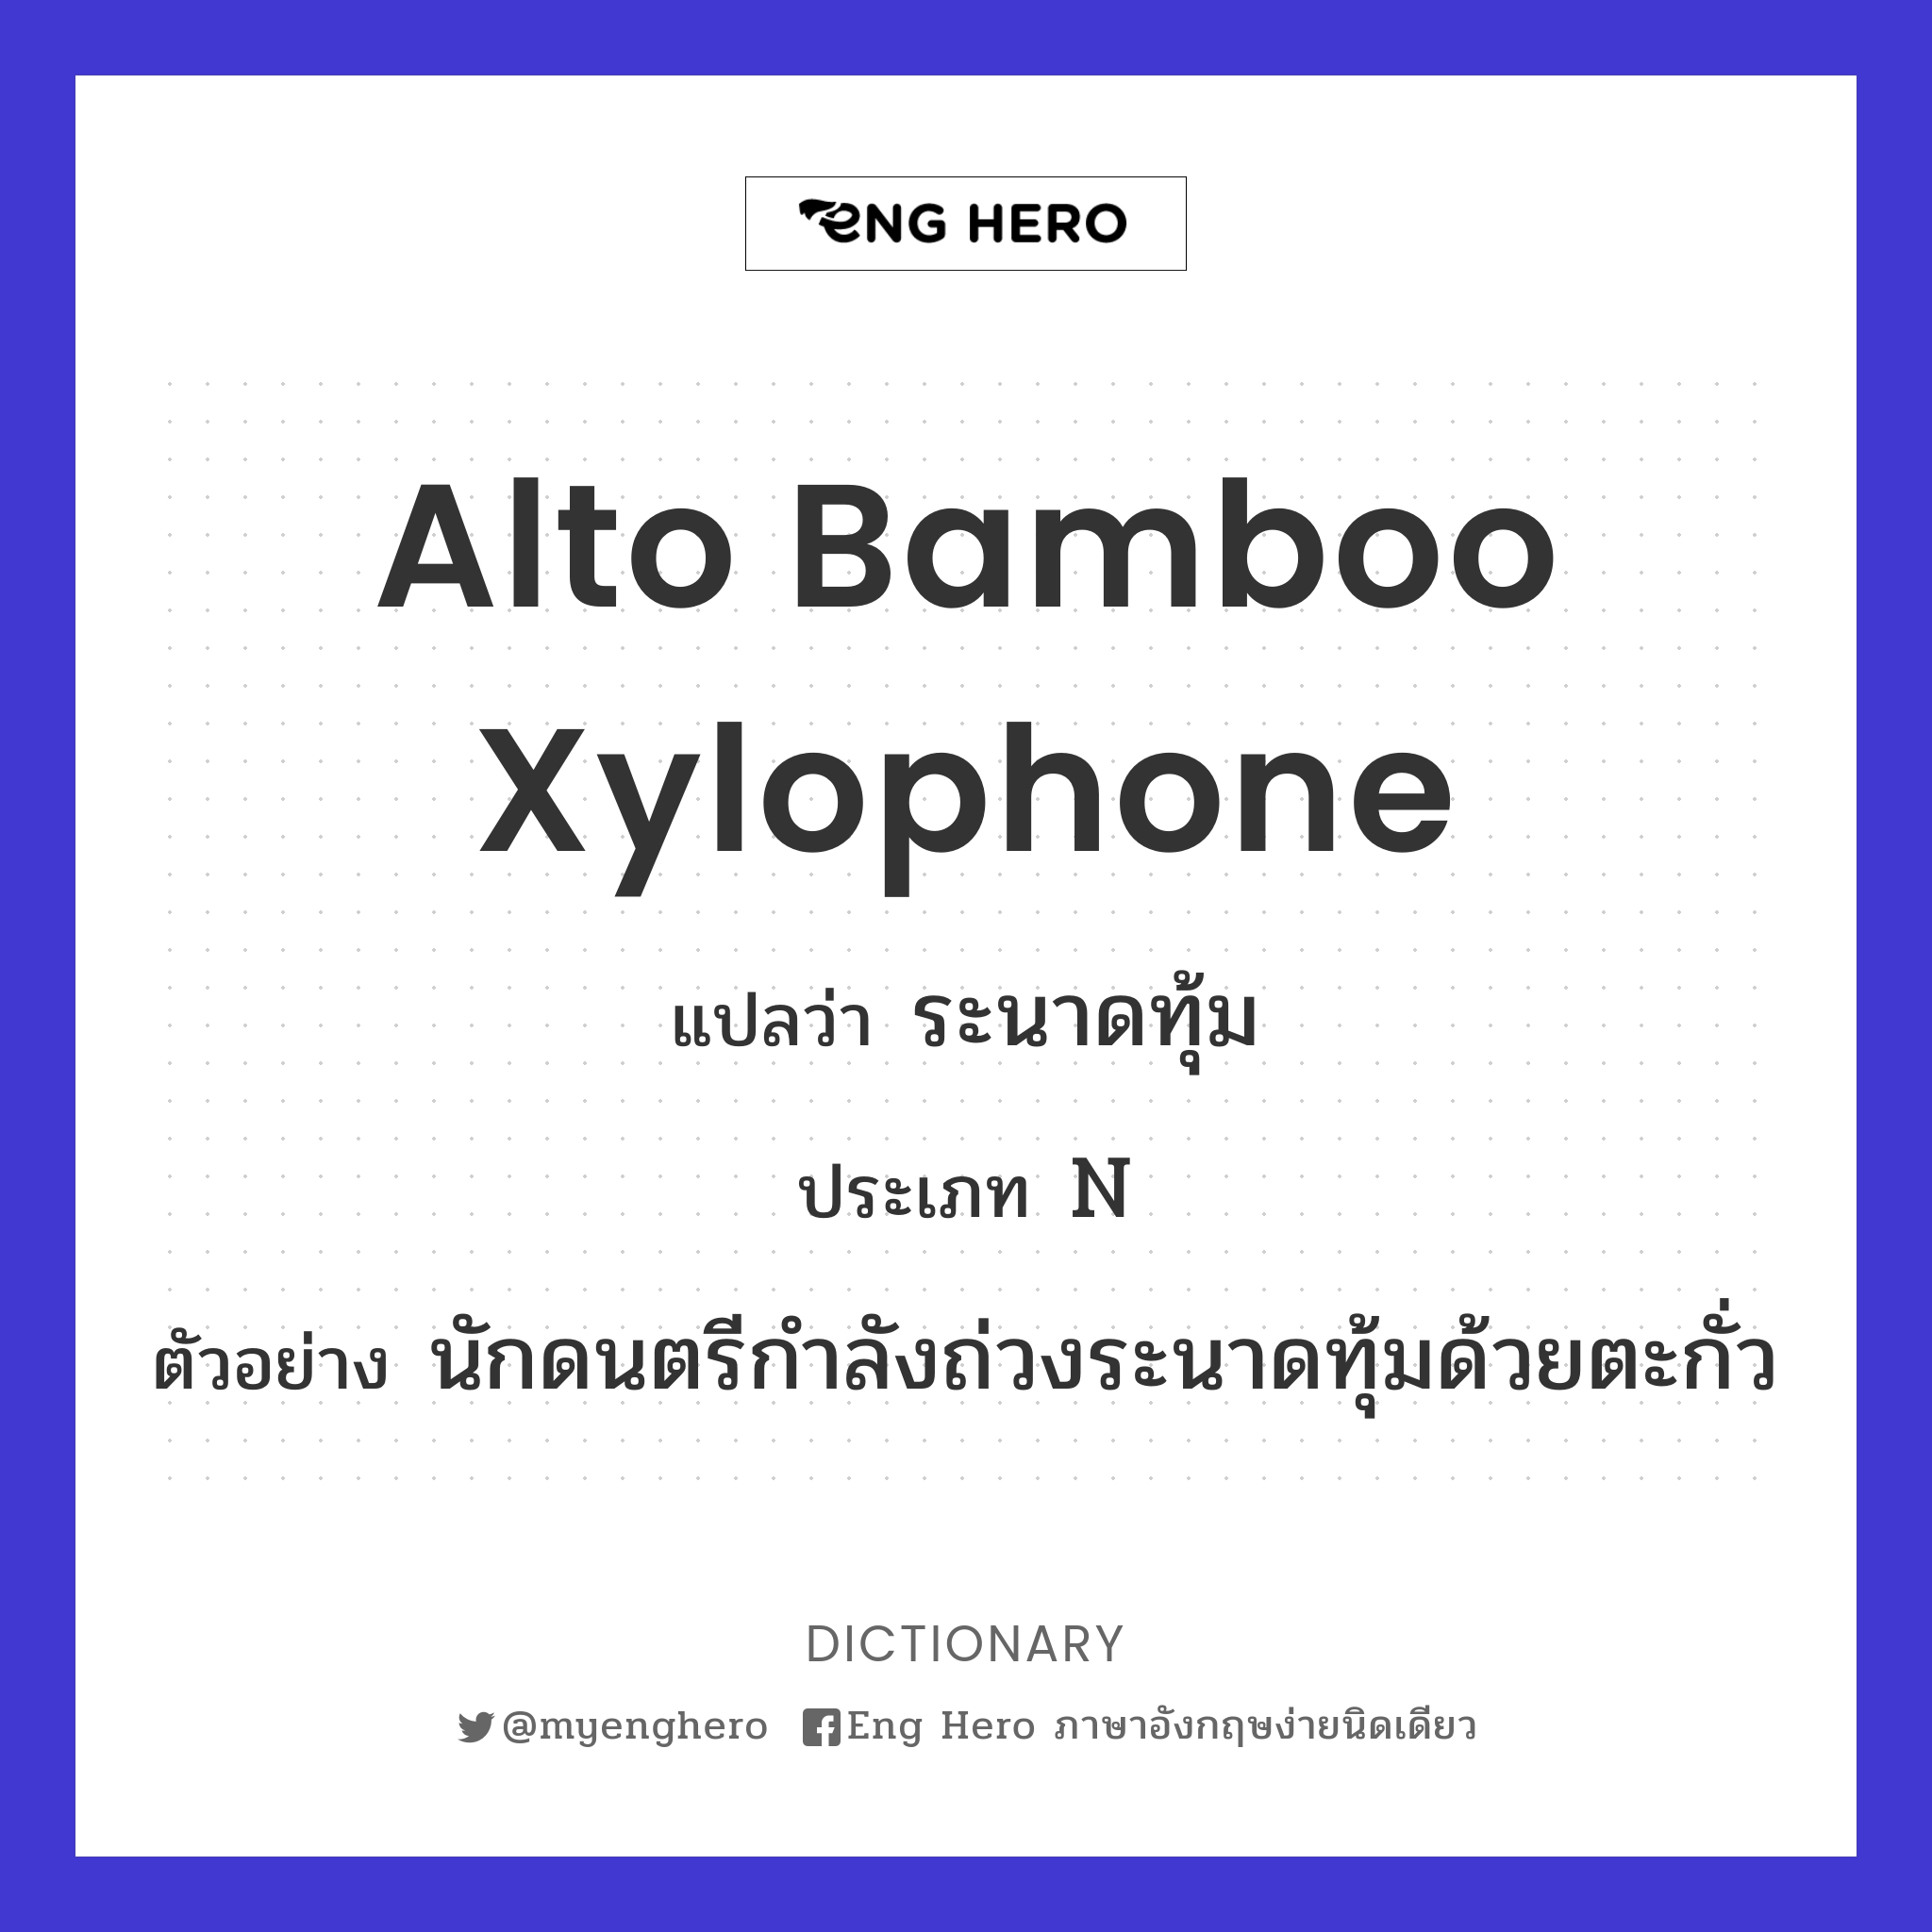 alto bamboo xylophone